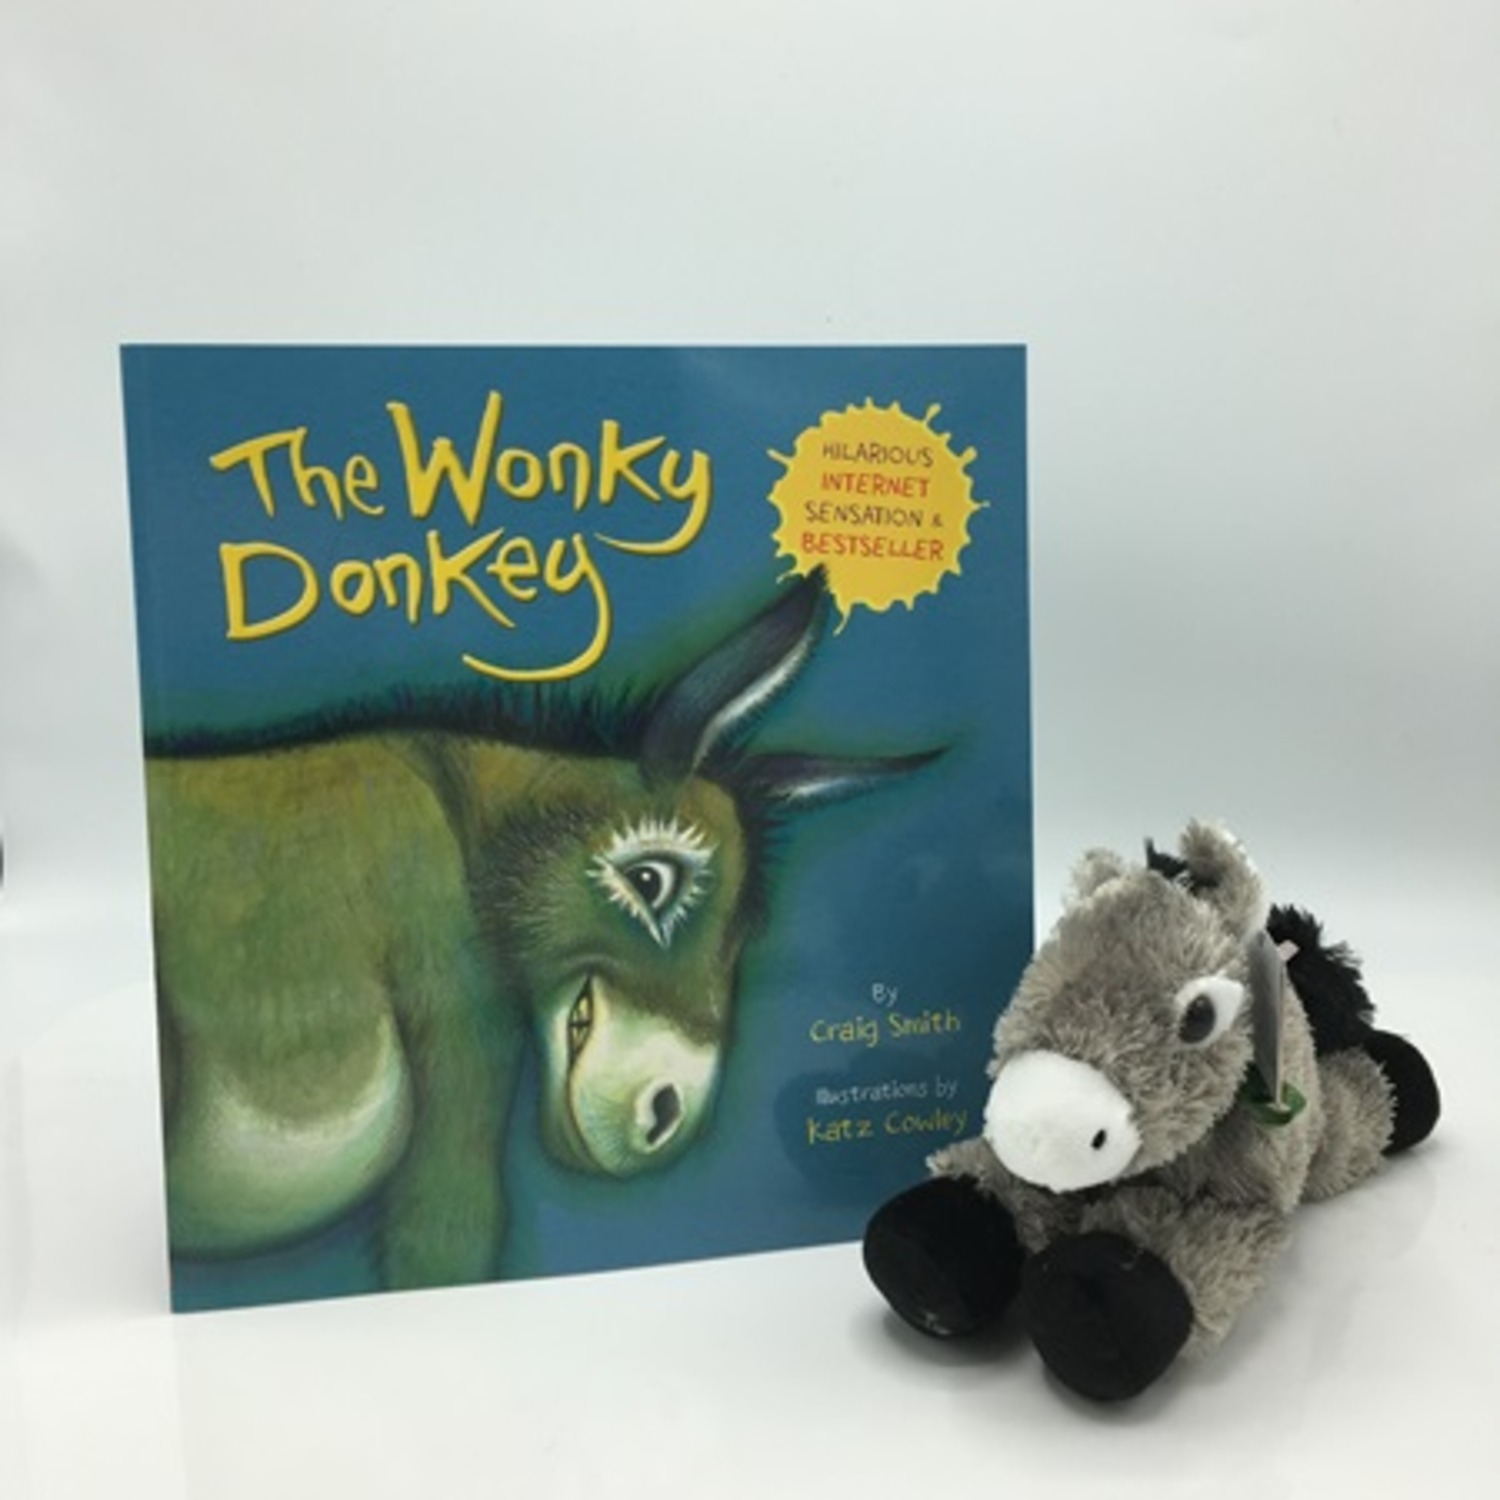 Wonky Donkey book and flopsie donkey soft
  toy